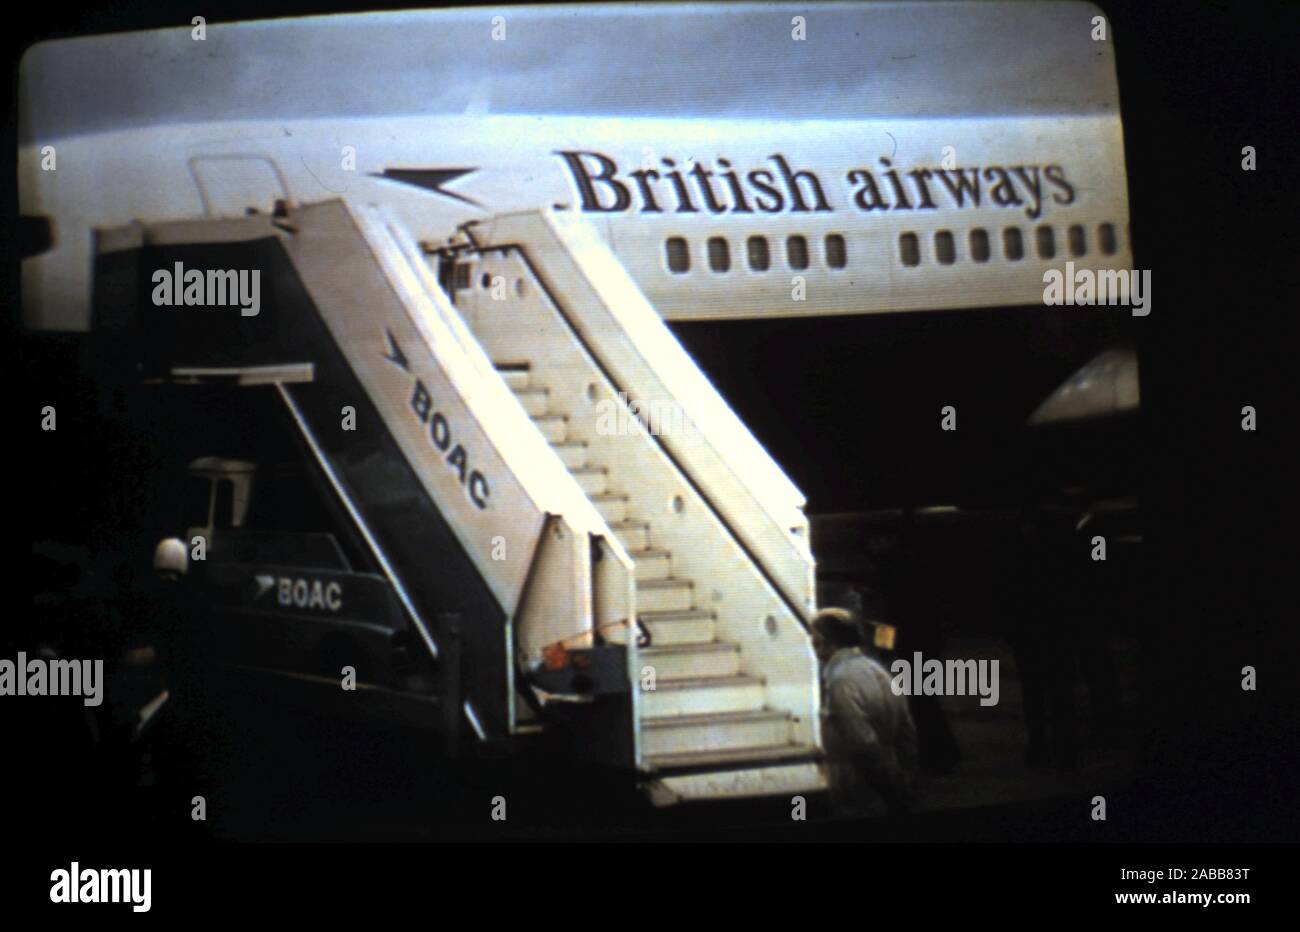 - Teleclip Vintage British Airways - l'aéroport de Heathrow - photo prise directement sur écran de télévision vers 1970 Banque D'Images